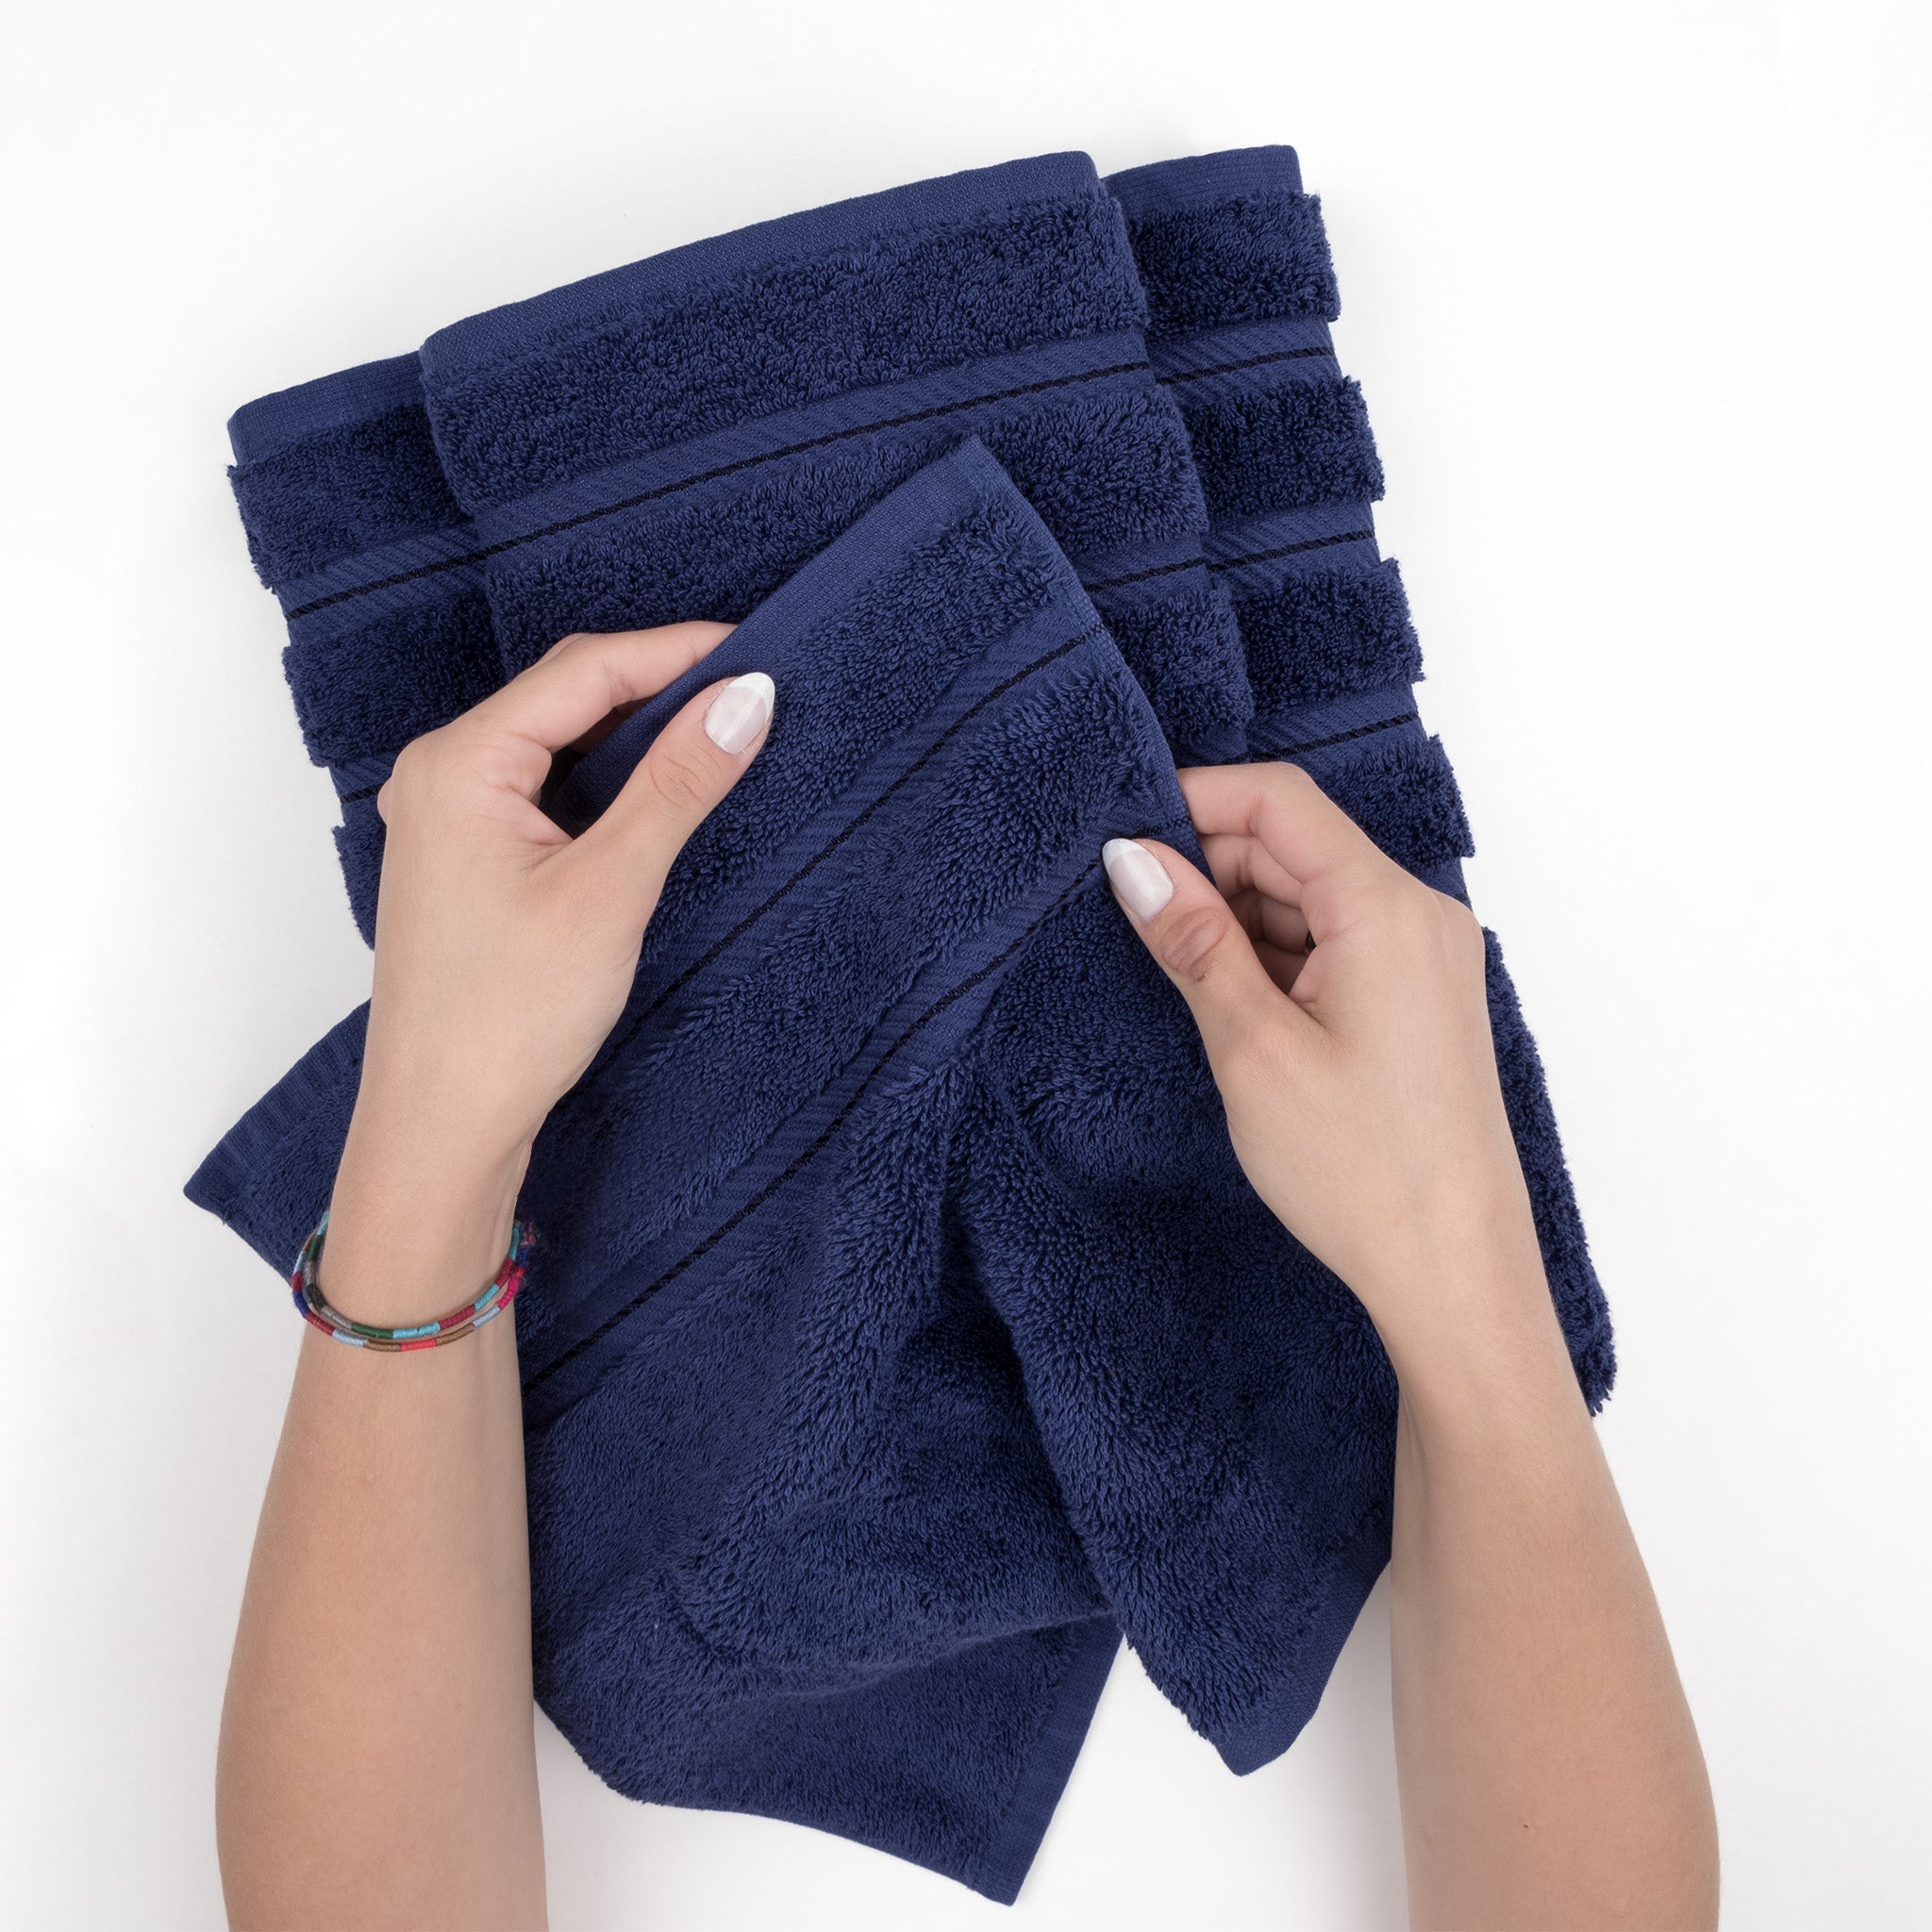 American Soft Linen 100% Turkish Cotton 4 Pack Bath Towel Set Wholesale navy-blue-5